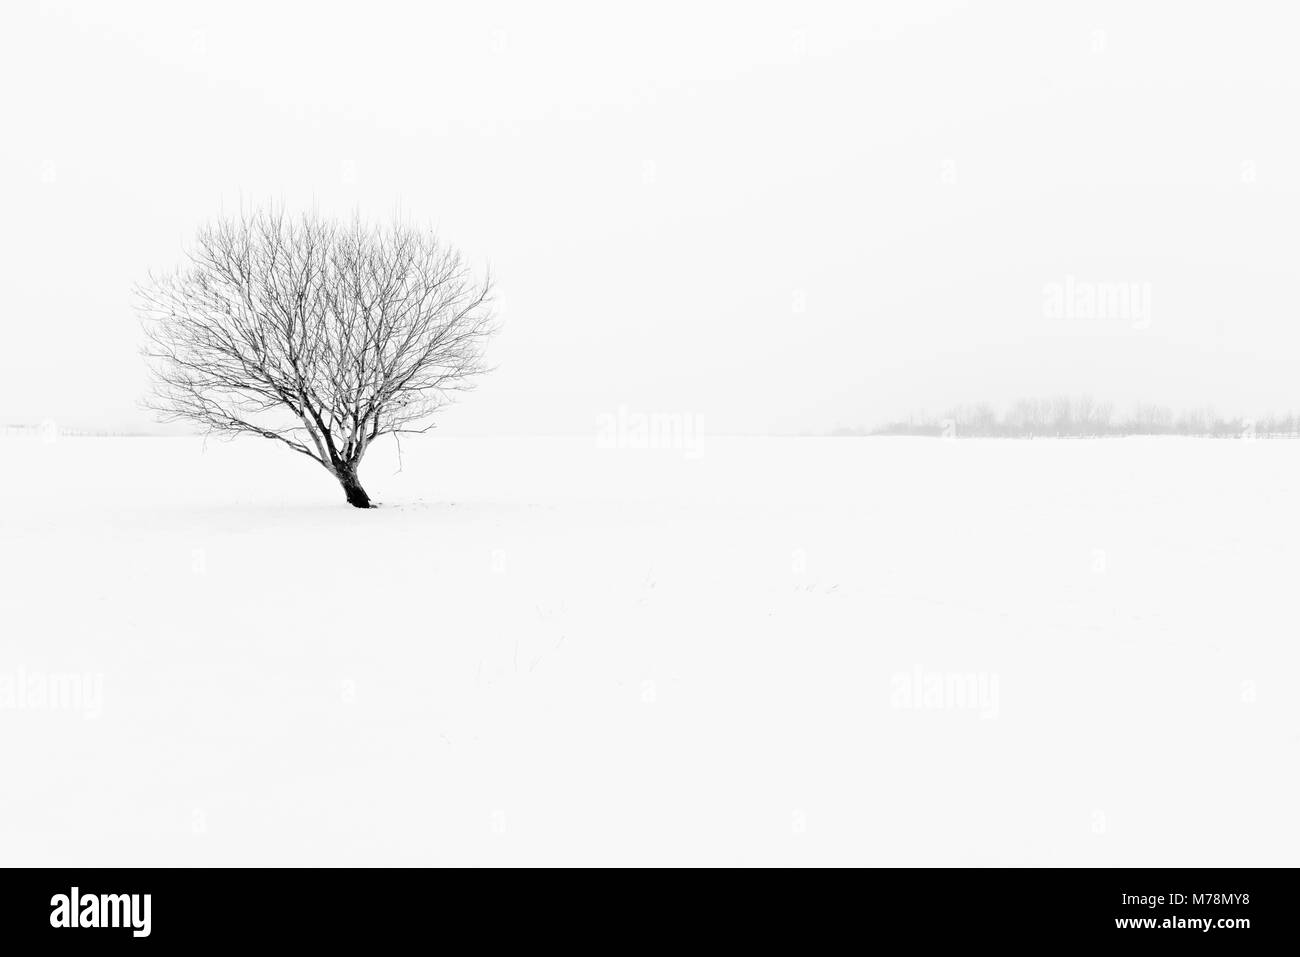 Winter schwarze und weiße neblige Landschaft minimalistischen Schnee Szene mit einsamen Baum Stockfoto